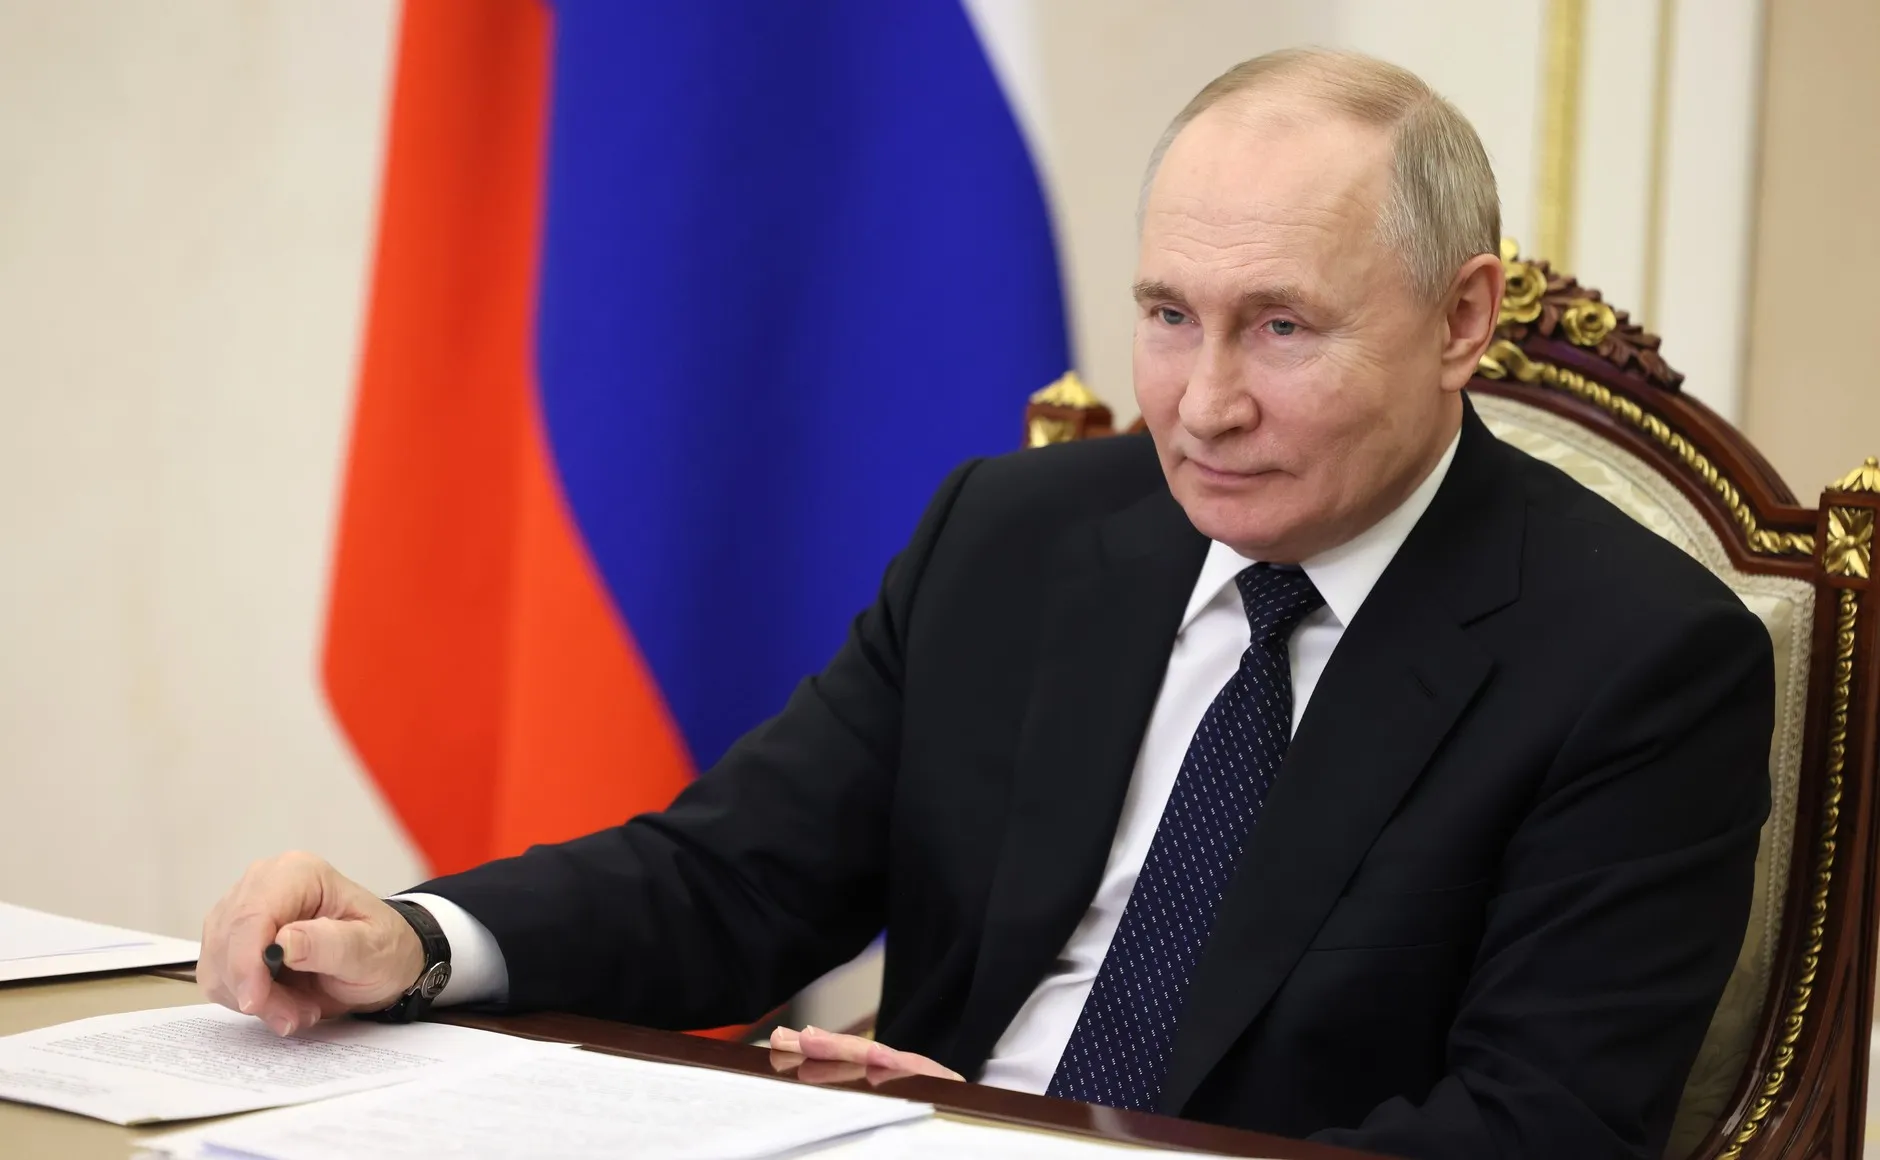 Путин пообещал обеспечить максимальную предсказуемость условий для бизнеса в РФ